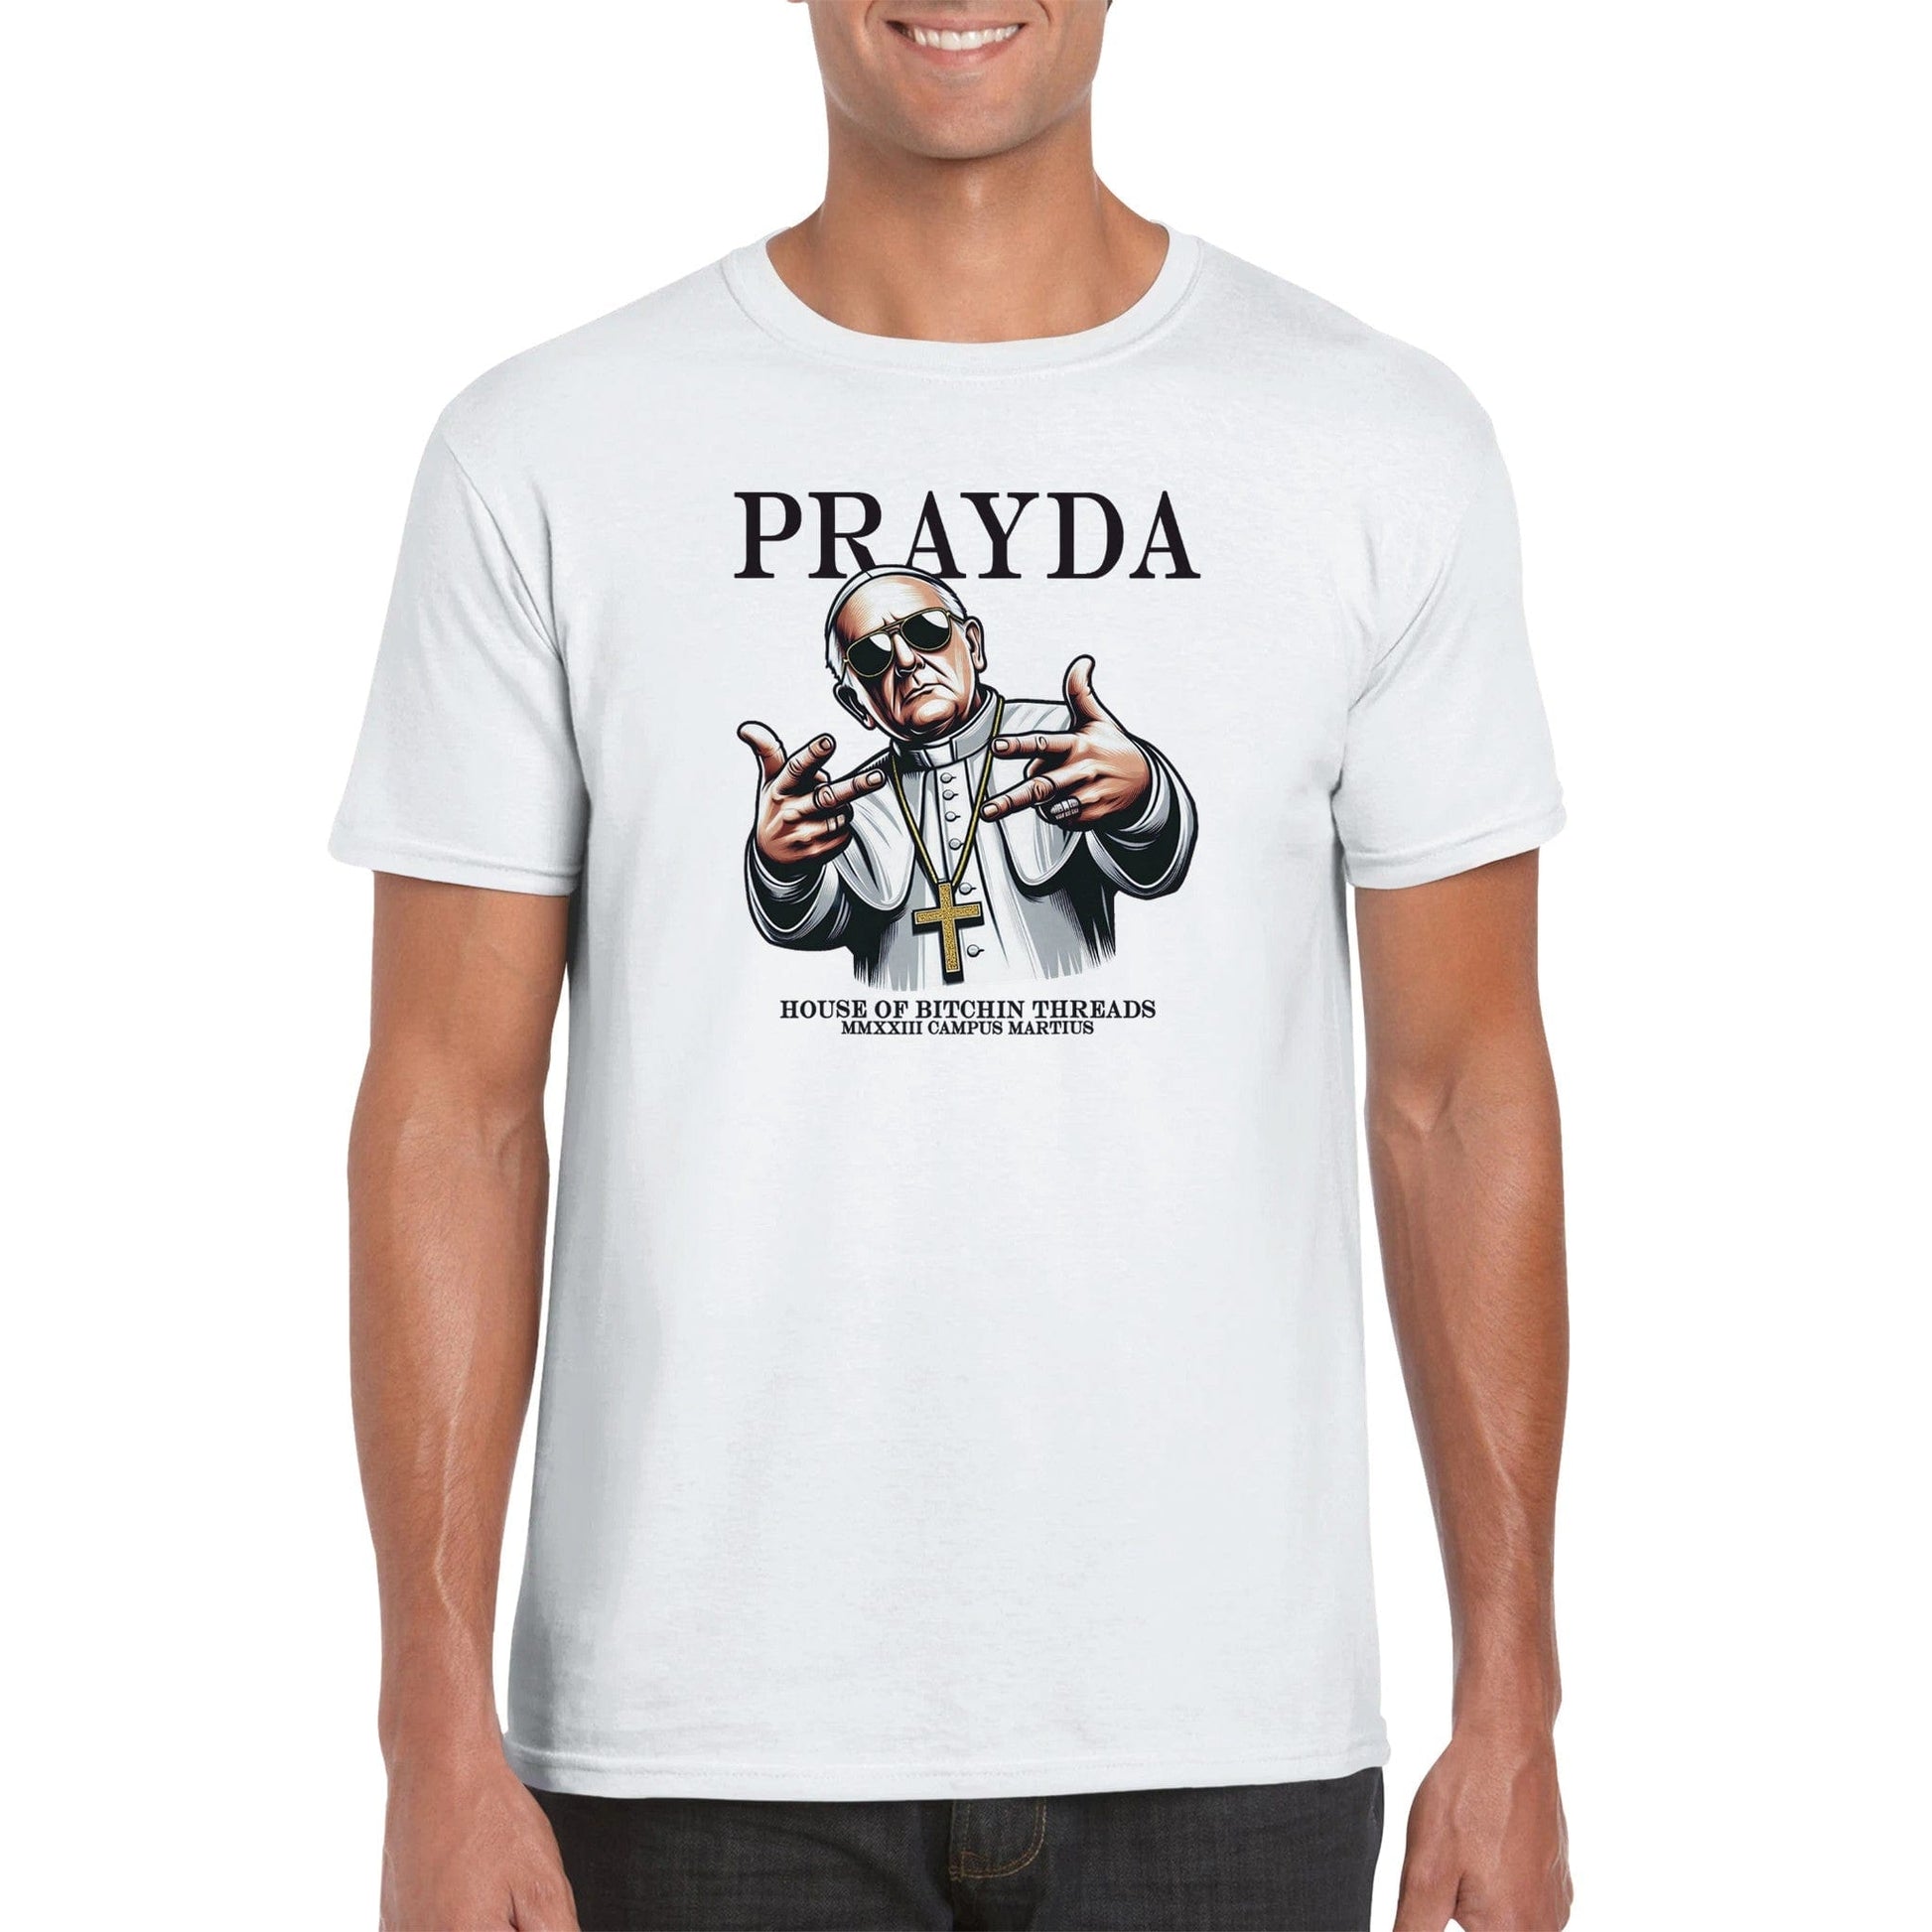 Prayda Pope T-Shirt Graphic Tee Australia Online